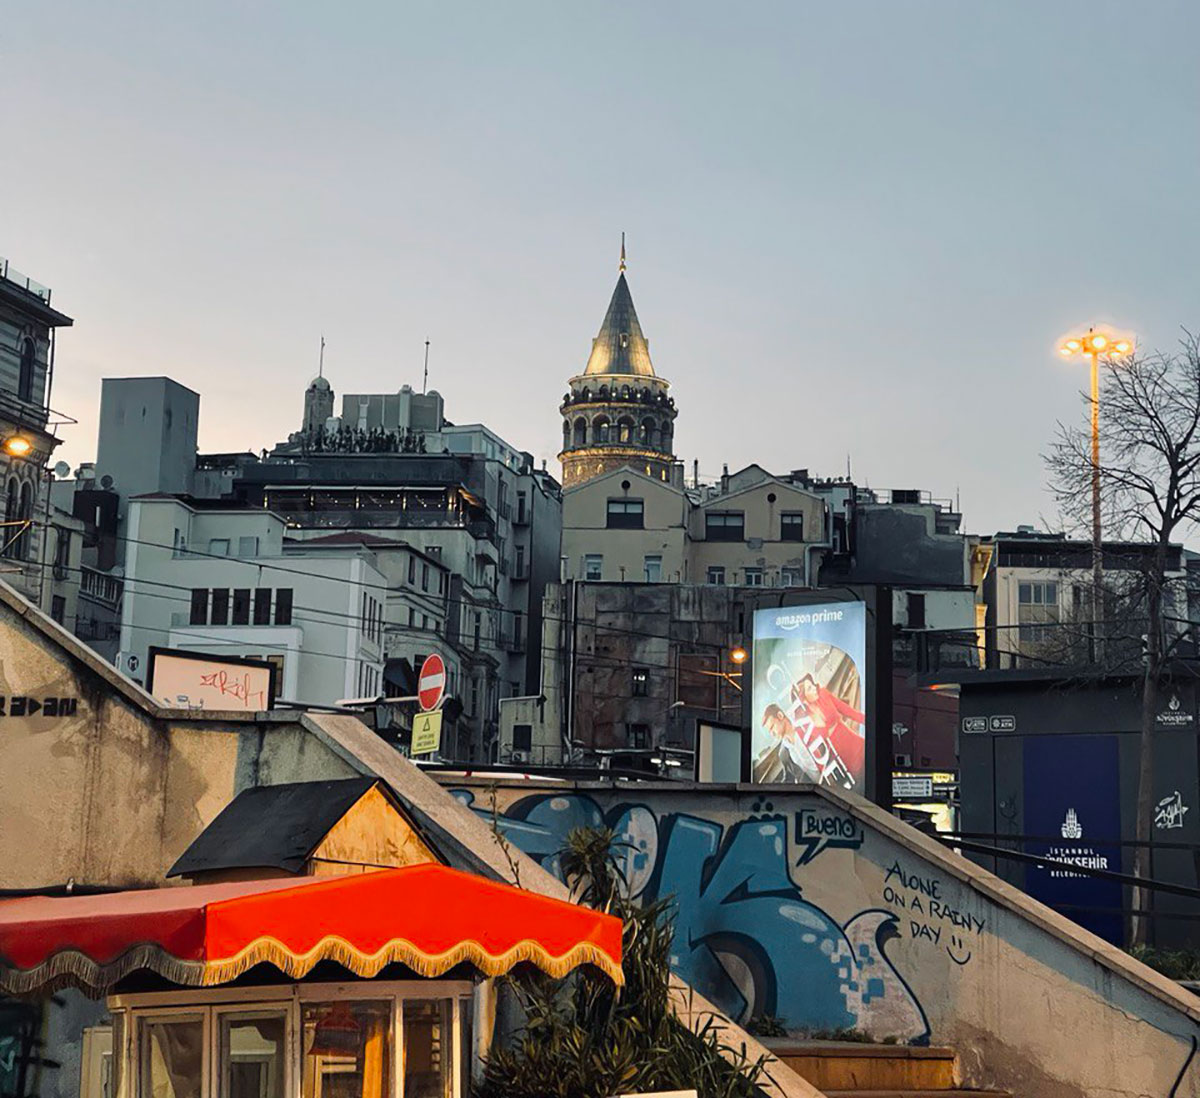 Бейоглу после Заката: Ночная Жизнь, Бары и Развлечения в Стамбуле